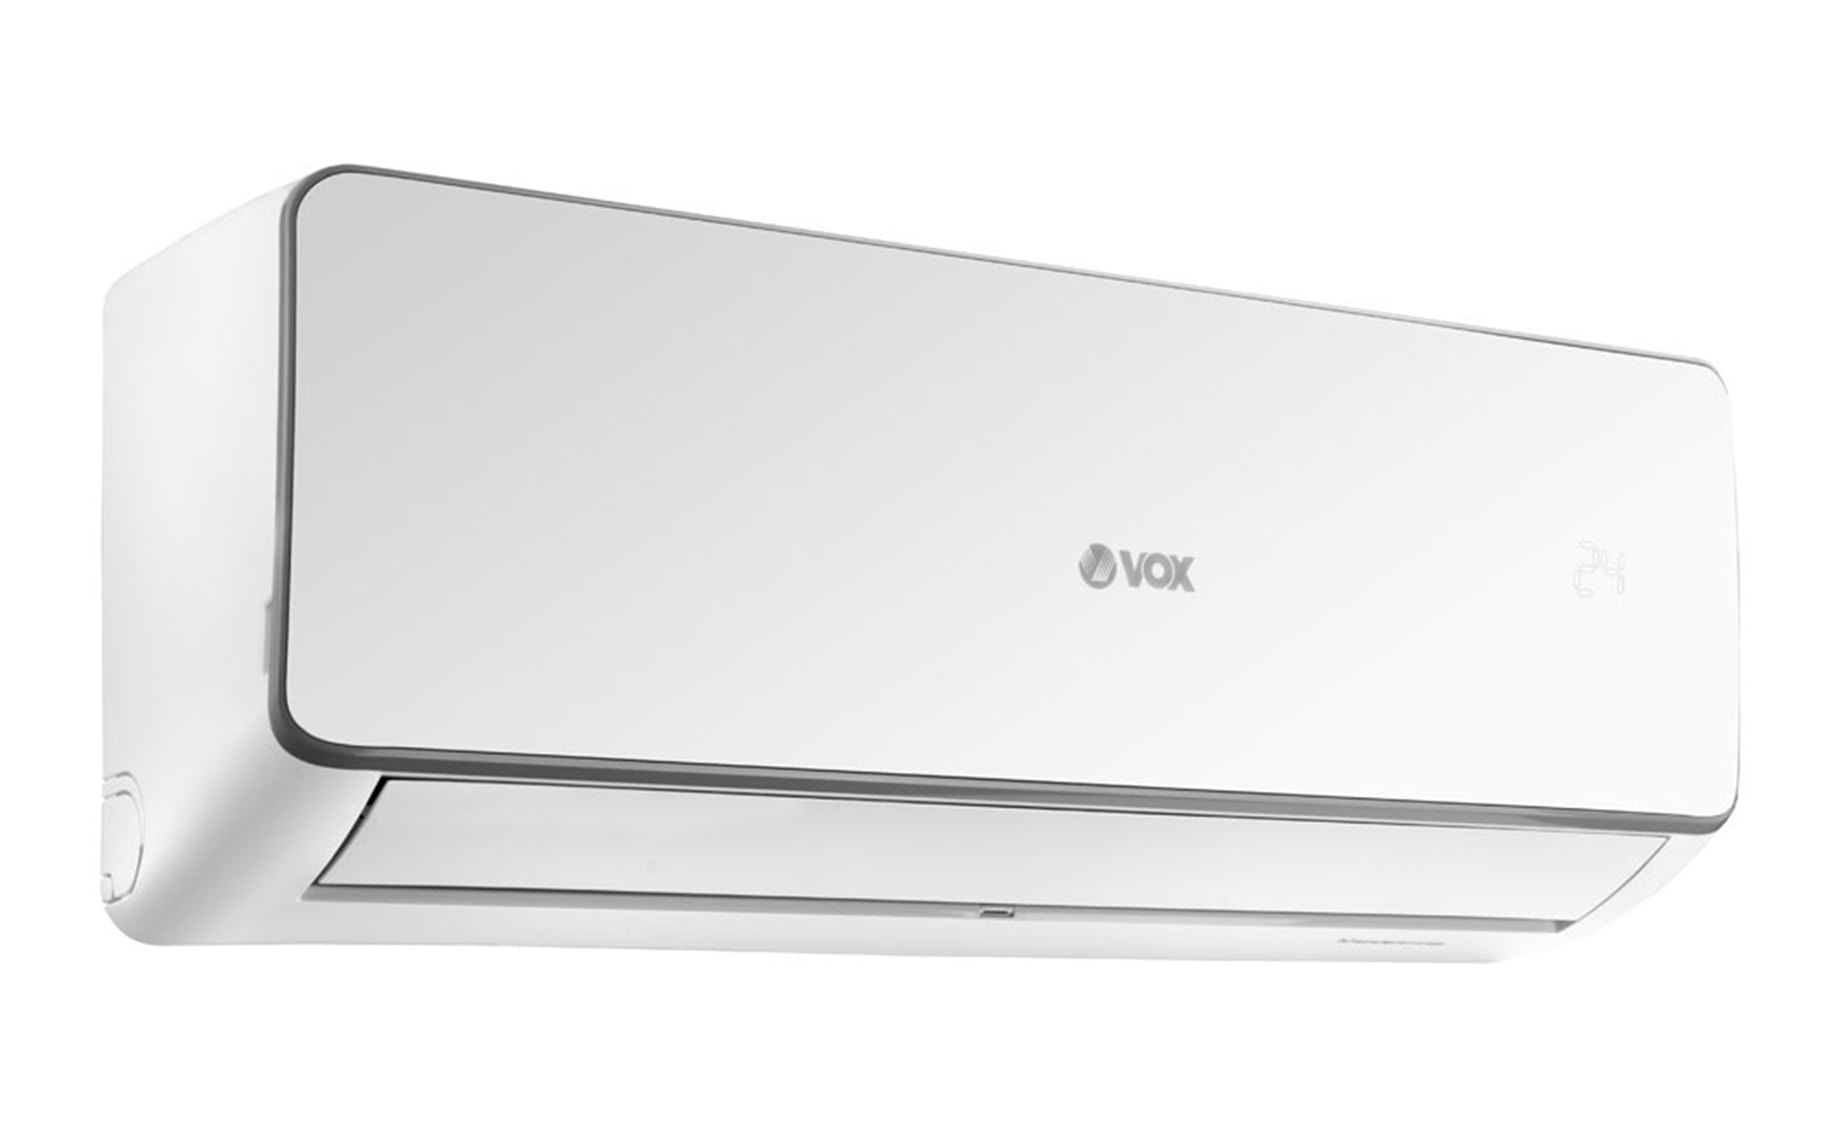 Vox IVA1-18IR klima uređaj